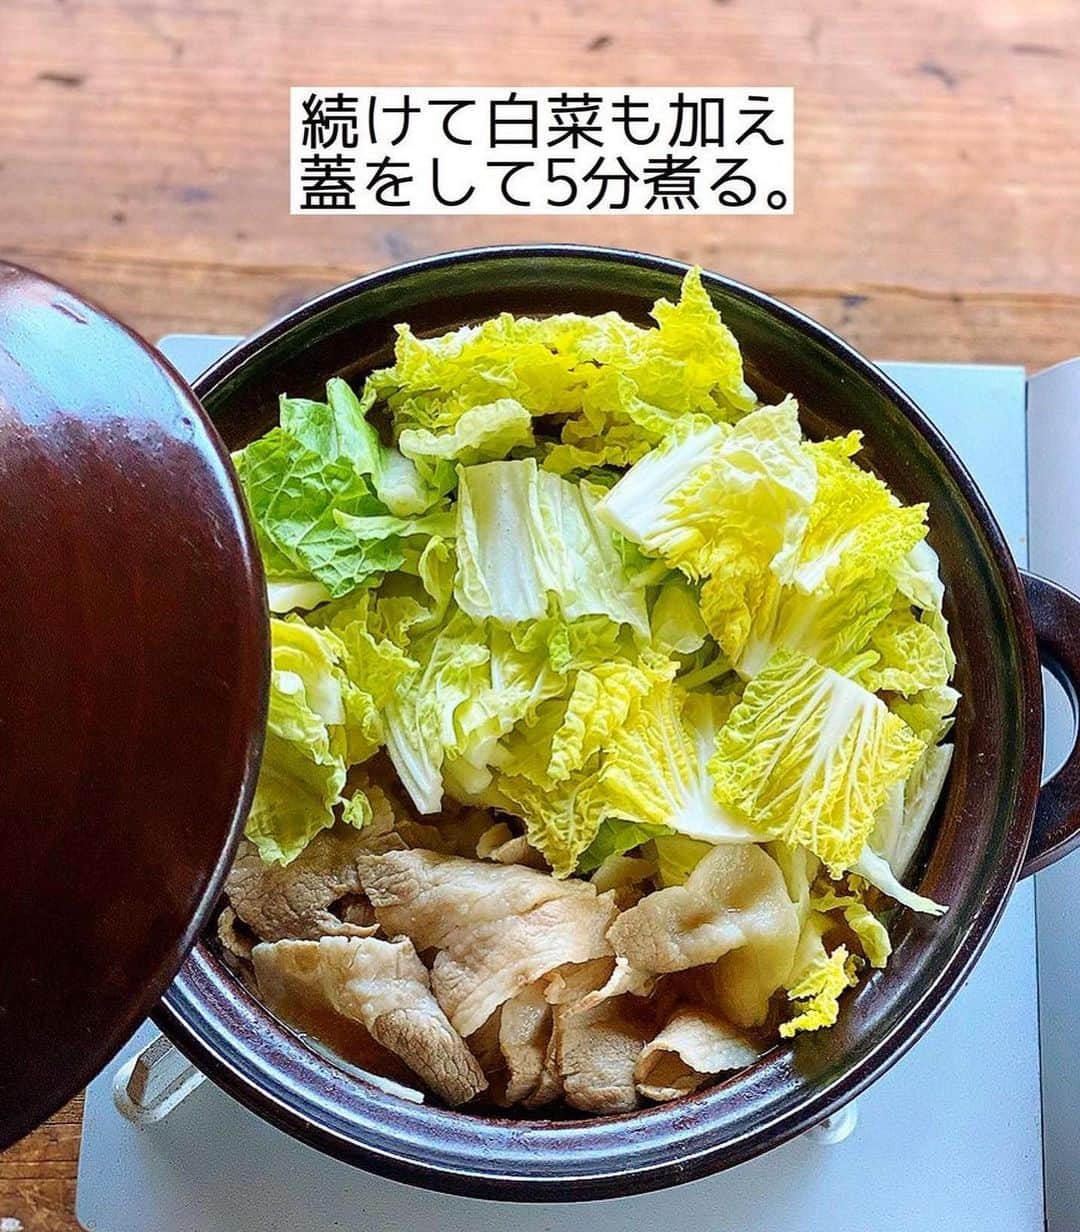 Mizuki【料理ブロガー・簡単レシピ】さんのインスタグラム写真 - (Mizuki【料理ブロガー・簡単レシピ】Instagram)「・味噌バターでコクうま💕 ⁡ ［#レシピ ］ ーーーーーーーーーーーーー 豚バラ白菜の味噌バター鍋 ーーーーーーーーーーーーー ⁡ ⁡ ⁡ おはようございます☺️ ⁡ 今日ご紹介させていただくのは \ 豚バラ白菜の味噌バター鍋 / (再掲載✨) ⁡ 味噌×バターのコクうまスープで お肉も野菜もたっぷり摂れる💕 白菜の代わりにキャベツを使ったり 他の具を加えてカサ増ししても🙆‍♀️ 〆は雑炊、又はラーメンが おすすめですよ〜😋 ⁡ とっても簡単にできるので よかったらお試し下さいね✨ ⁡ ⁡ ⁡ ⋱⋰ ⋱⋰ ⋱⋰ ⋱⋰ ⋱⋰ ⋱⋰ ⋱⋰ 📍簡単・時短・節約レシピ更新中  Threadsもこちらから▼ @mizuki_31cafe ⁡ 📍謎の暮らし＆変なライブ垢 @mizuki_kurashi ⋱⋰ ⋱⋰ ⋱⋰ ⋱⋰ ⋱⋰ ⋱⋰ ⋱⋰ ⁡ ⁡ ⁡ ＿＿＿＿＿＿＿＿＿＿＿＿＿＿＿＿＿＿＿ 【2人分】 豚バラ薄切り肉...200g 白菜...1/6個(350g) ニラ...1/2束 にんにく...1かけ ●水...600ml ●味噌...大3 ●みりん...大2 ●鶏がらスープ...大1/2 バター...15g 粗挽き黒こしょう...少々 ⁡ 1.豚肉とニラは5cm長さに切る。白菜の芯は1cm幅、葉はざく切りにする。にんにくは薄切りにする。 2.鍋に●とにんにくを入れて中火で煮立て、豚肉を加えてほぐす。続けて白菜も加え、蓋をして5分煮る。 3.仕上げにニラを加えてひと煮立ちさせ、バターをのせて黒こしょうを振る。 ￣￣￣￣￣￣￣￣￣￣￣￣￣￣￣￣￣￣￣ ⁡ ⁡ ⁡ 《ポイント》 ♦︎豚肉の代わりに鶏肉(一口大に切る)で作ってもおいしいです♩白菜の代わりにキャベツを使用しても♩ ♦︎きのこやもやし、油揚げやコーンなど追加しても◎ ♦︎味噌は合わせ味噌を使用しています♩ ⁡ ⁡ ⁡ ⁡ ⁡ ⁡ ⋱⋰ ⋱⋰ ⋱⋰ ⋱⋰ ⋱⋰ ⋱⋰ ⋱⋰  愛用している調理器具・器など   #楽天ROOMに載せてます ‎𐩢𐩺  (ハイライトから飛べます🕊️) ⋱⋰ ⋱⋰ ⋱⋰ ⋱⋰ ⋱⋰ ⋱⋰ ⋱⋰ ⁡ ⁡ ⁡ ⁡ ⁡ ✼••┈┈┈┈┈••✼••┈┈┈┈┈••✼ 今日のごはんこれに決まり！ ‎𓊆#Mizukiのレシピノート 500品𓊇 ✼••┈┈┈┈┈••✼••┈┈┈┈┈••✼ ⁡ ˗ˏˋ おかげさまで25万部突破 ˎˊ˗ 料理レシピ本大賞準大賞を受賞しました✨ ⁡ 6000点の中からレシピを厳選し まさかの【500レシピ掲載】 肉や魚のメインおかずはもちろん 副菜、丼、麺、スープ、お菓子 ハレの日のレシピ、鍋のレシピまで 全てこの一冊で完結 𓌉◯𓇋 (全国の書店・ネット書店で発売中) ⁡ ⁡ ⁡ ⁡ ⁡ ⁡ #豚バラ #豚肉レシピ #白菜 #白菜レシピ  #鍋 #鍋料理 #鍋レシピ  #節約料理  #簡単料理  #時短料理 #mizukiレシピ  #時短レシピ #節約レシピ #簡単レシピ」11月18日 7時00分 - mizuki_31cafe